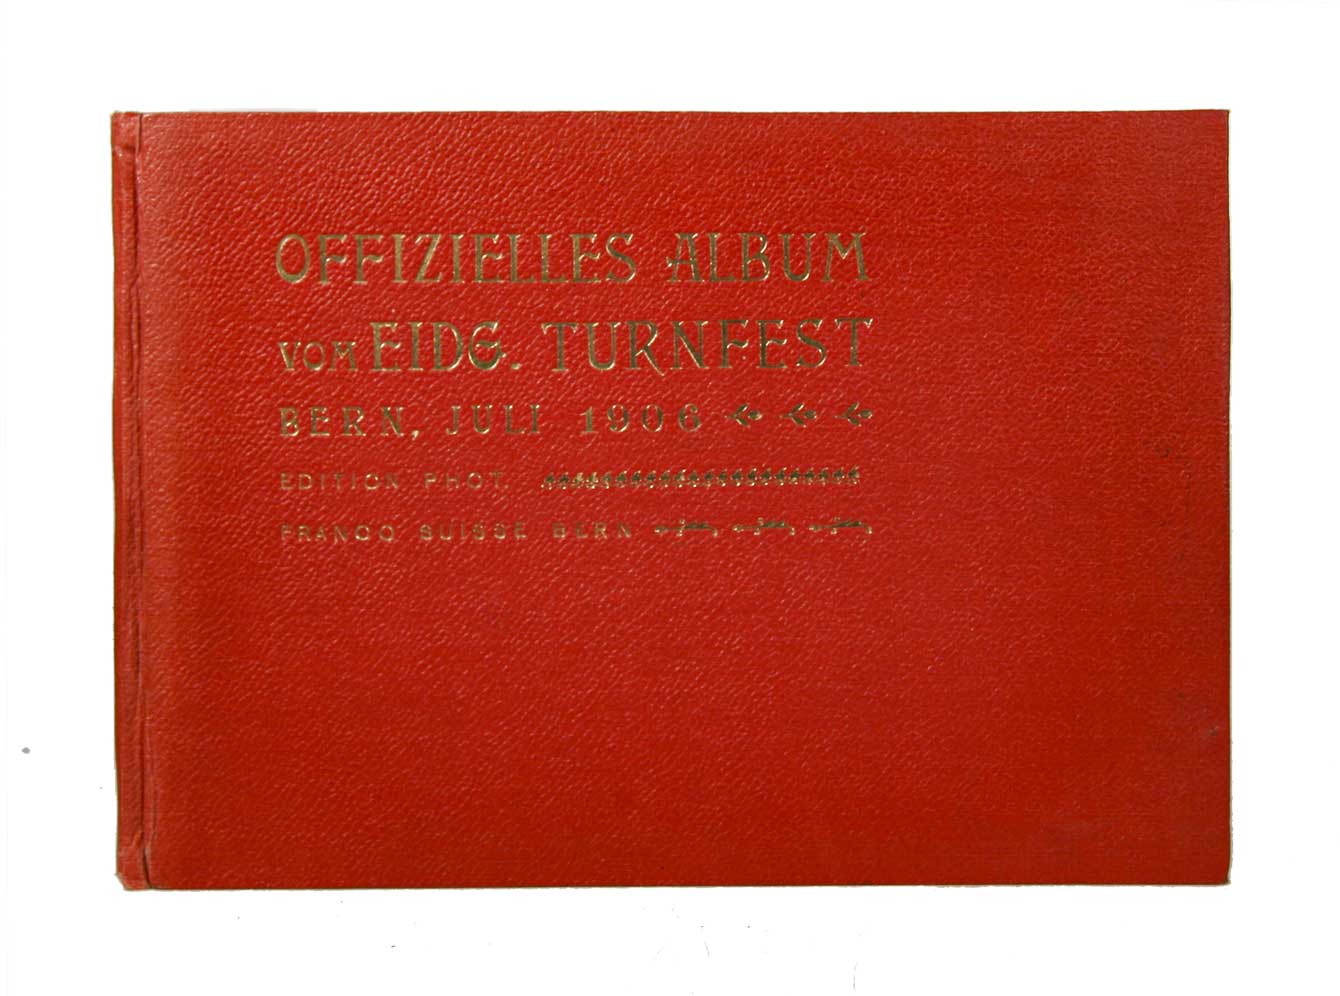  - Offizielles Festalbum vom Eidgenssischen Turnfest Bern, 14.-17. Juli 1906.